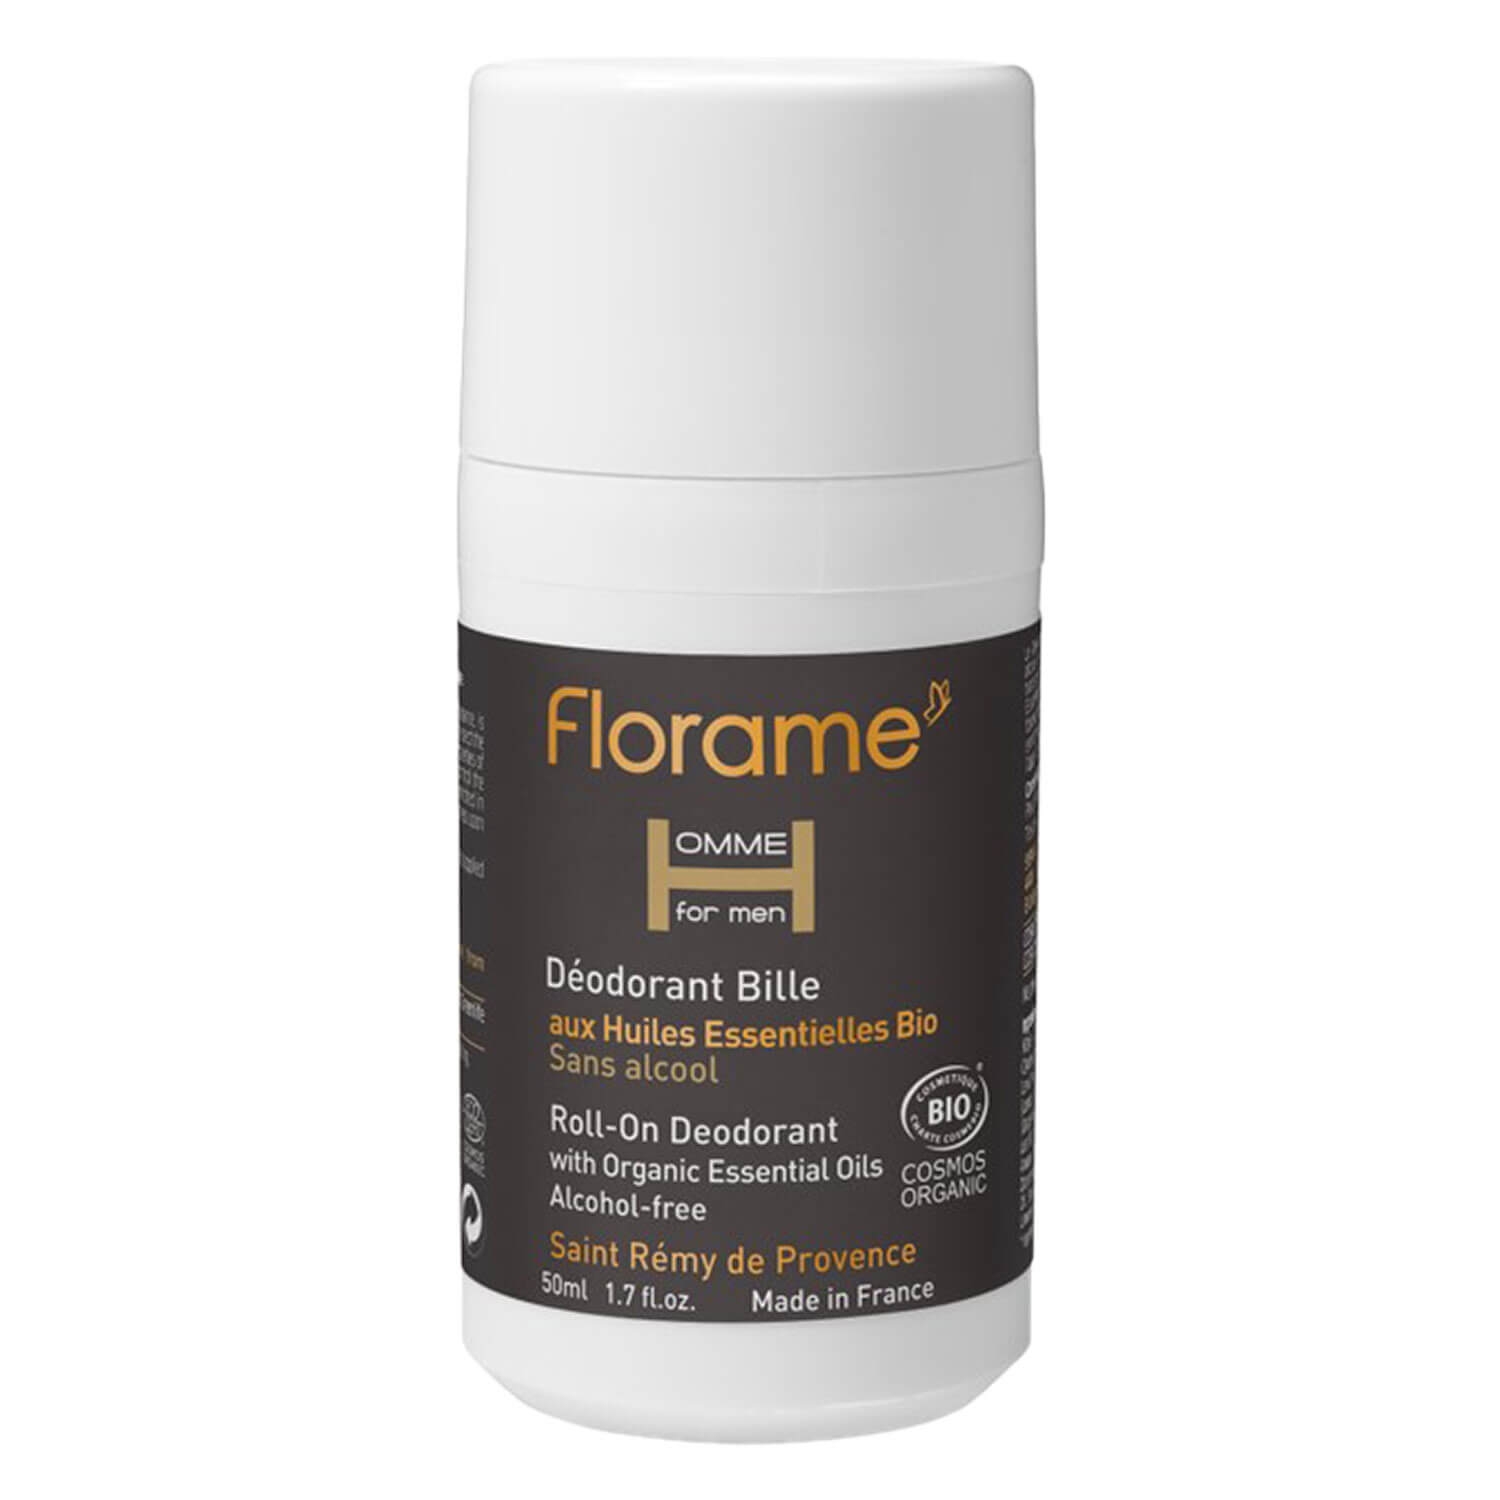 Produktbild von Florame Homme - Roll-on Deodorant